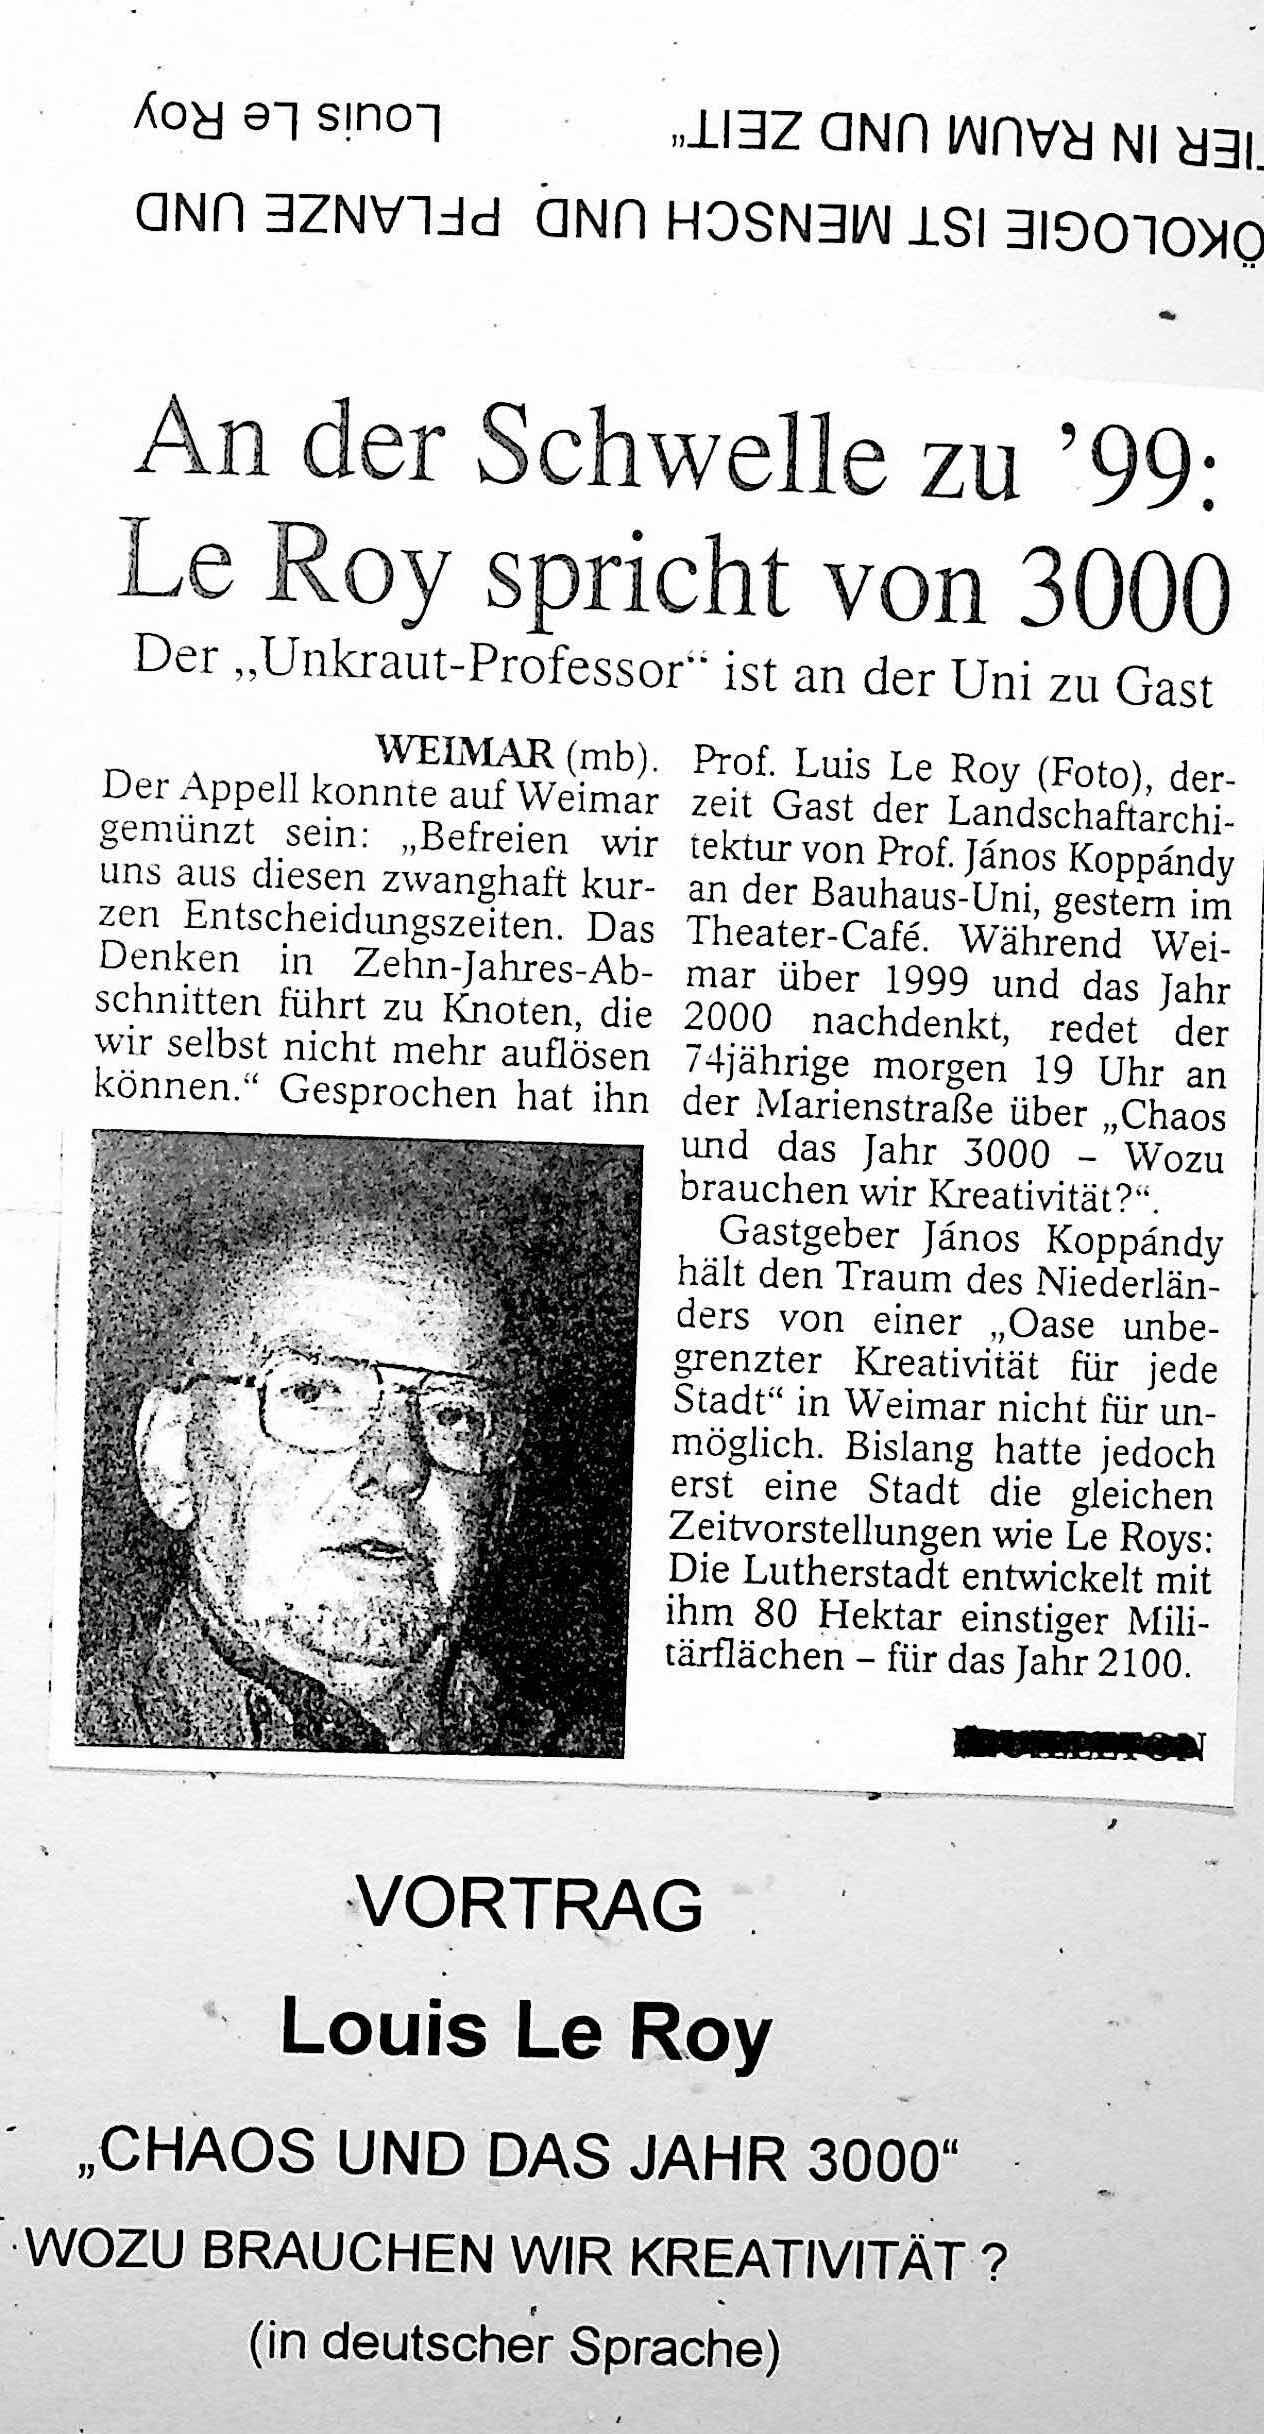 19981119_An_der_Schwelle_zu_99_le_Roy_spricht_von_3000_Weimar.jpg